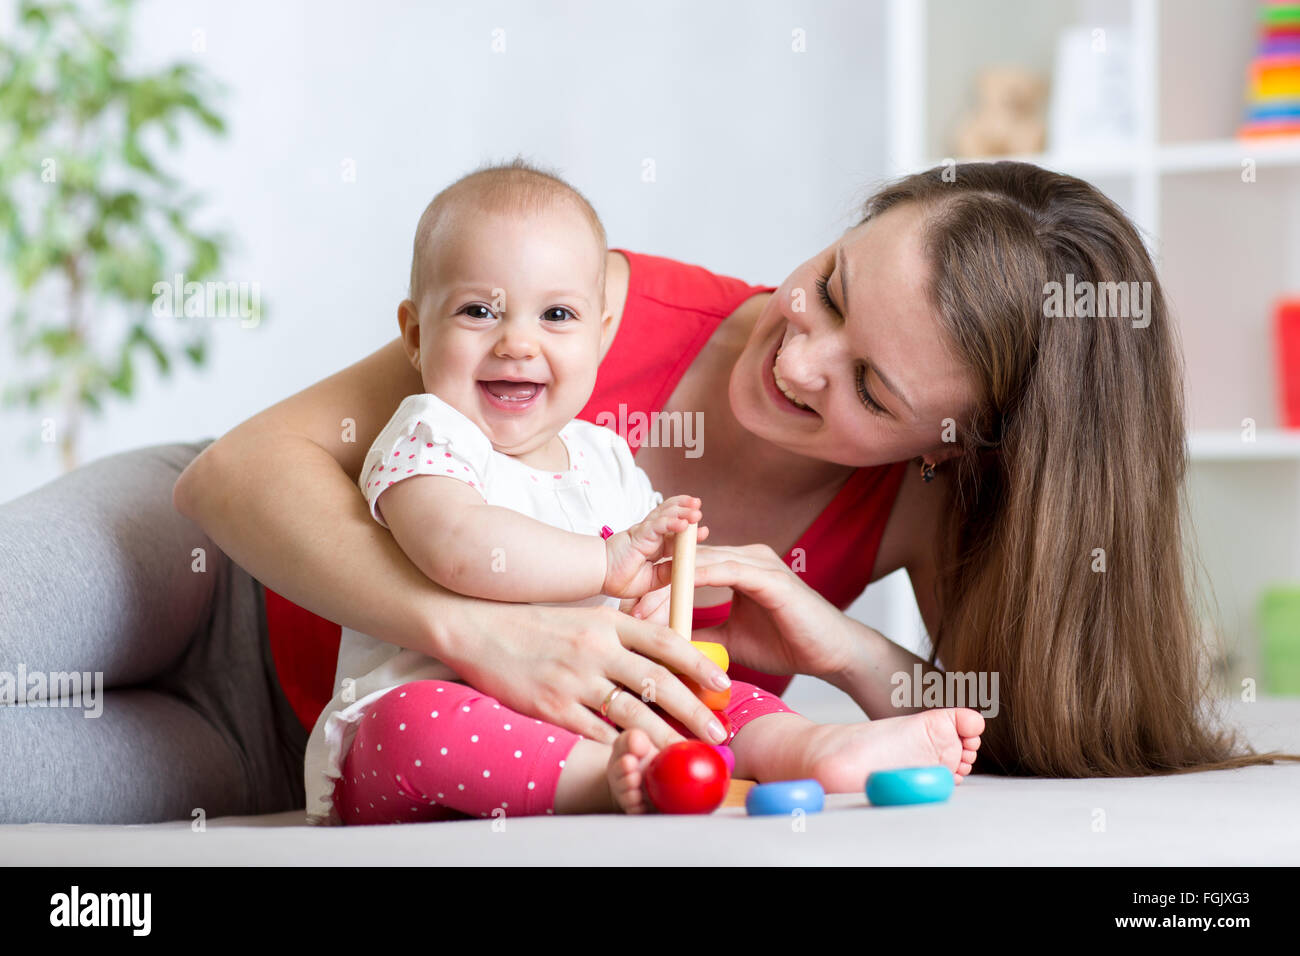 La madre y el bebé lindo jugar en casa interiores Foto de stock